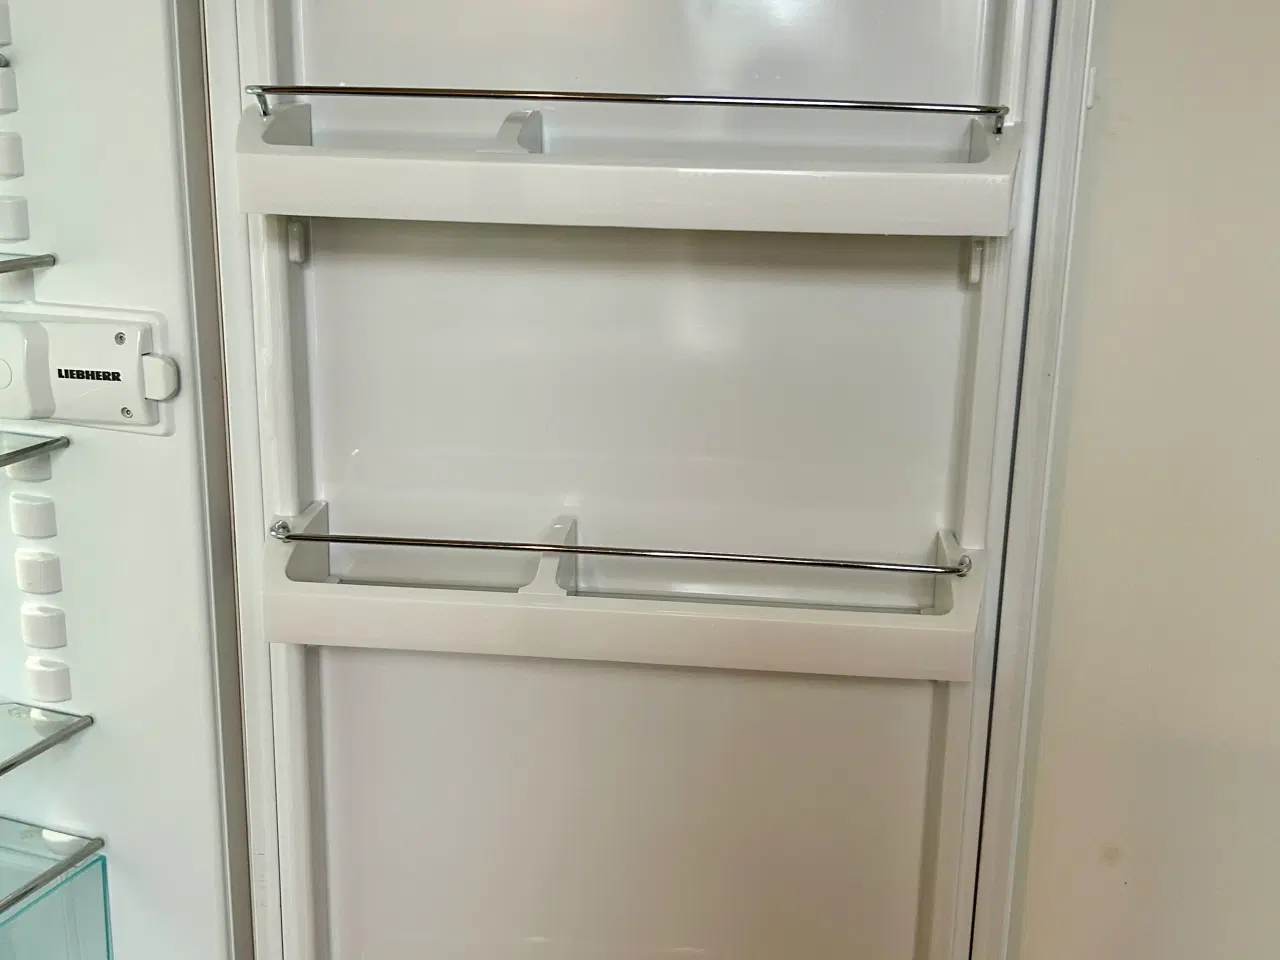 Billede 4 - Liebherr køleskab - Fungerer perfekt 